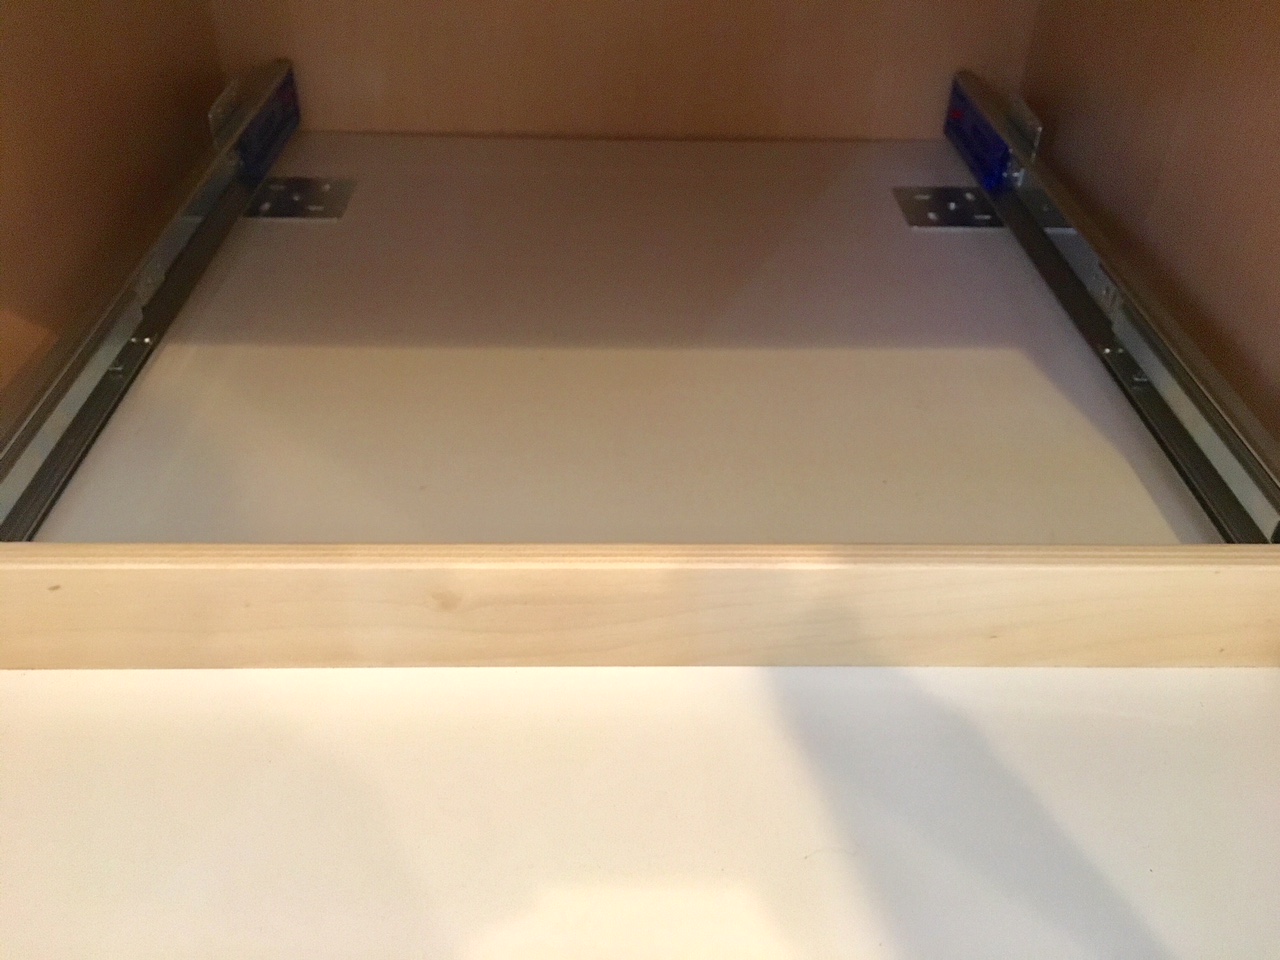 Installing Sliding Shelves in a Pantry